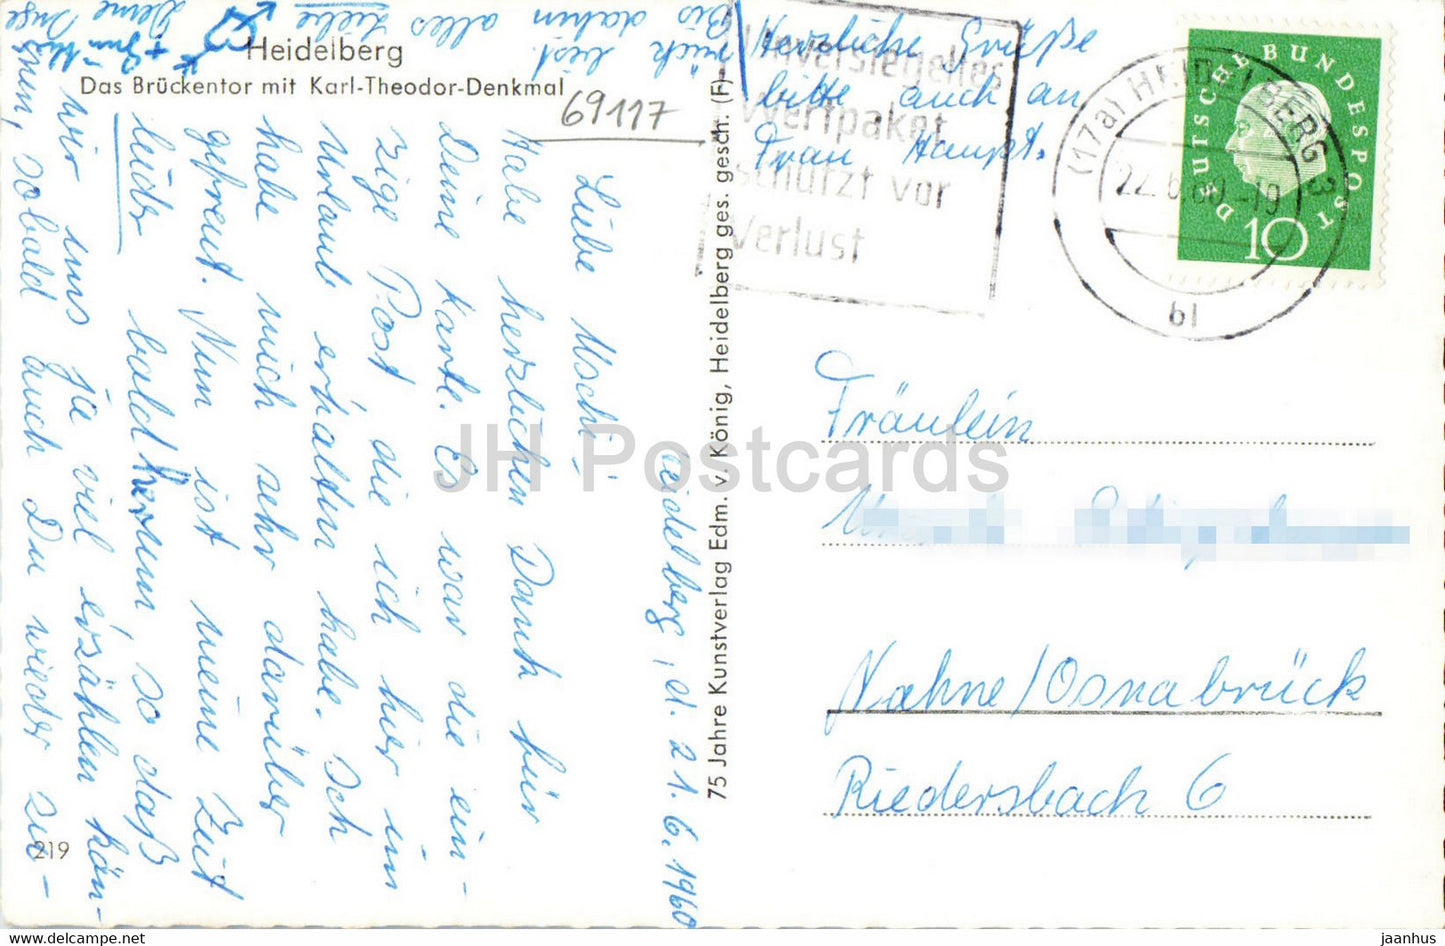 Heidelberg - Das Brückentor mit Karl Theodor Denkmal - Denkmal - alte Postkarte - 1960 - Deutschland - gebraucht